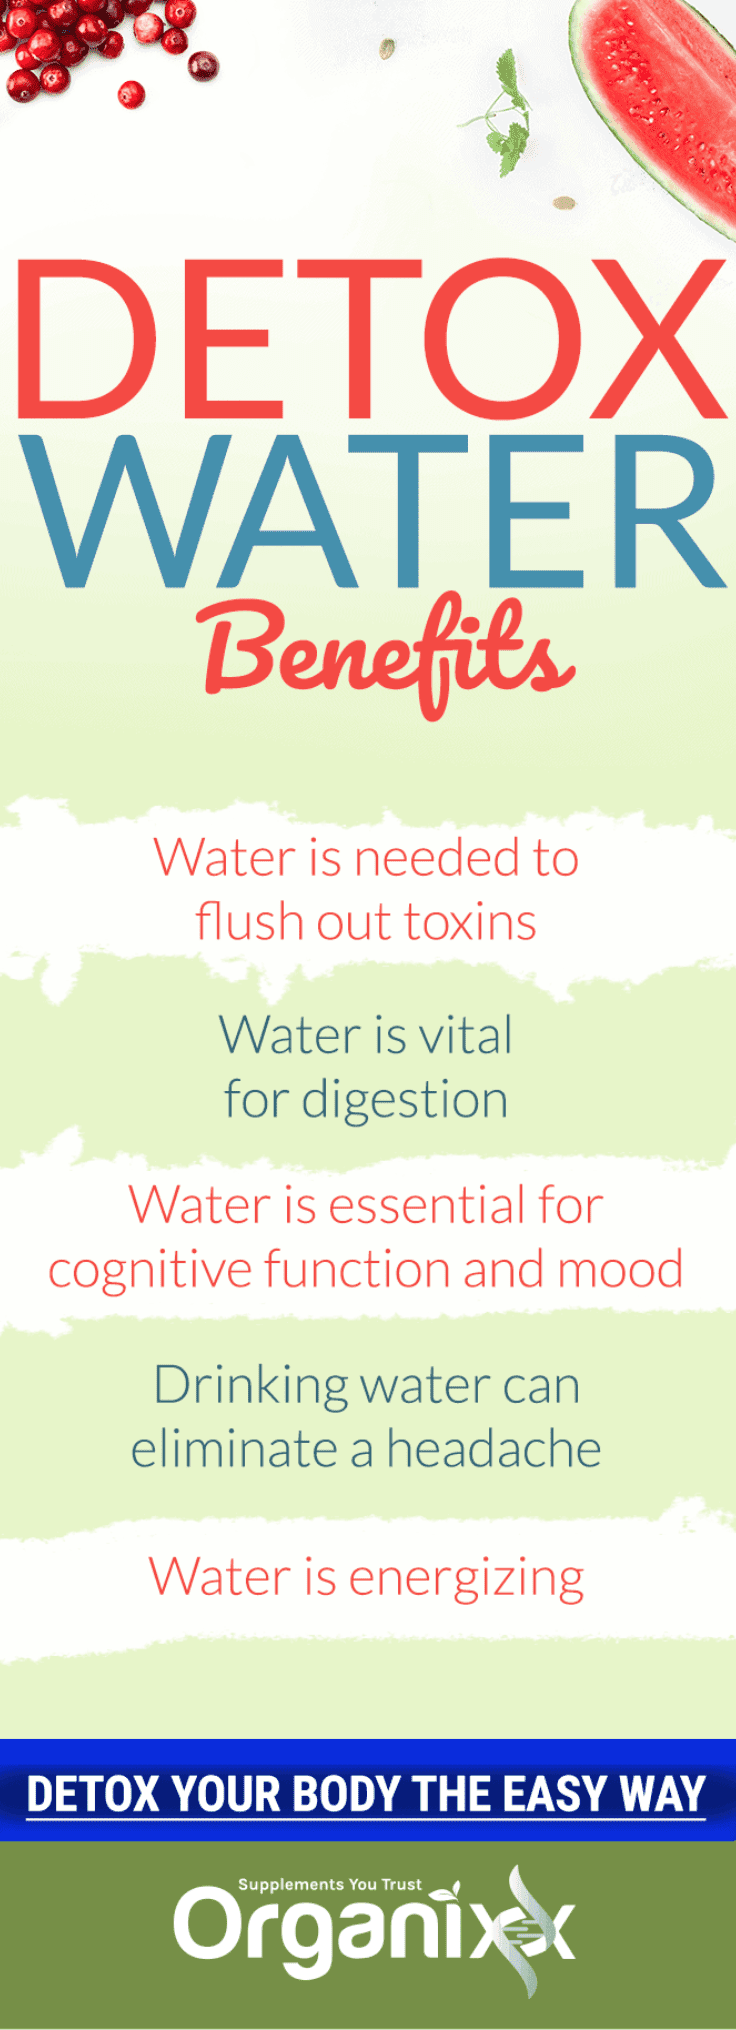 Detox Water Benefits